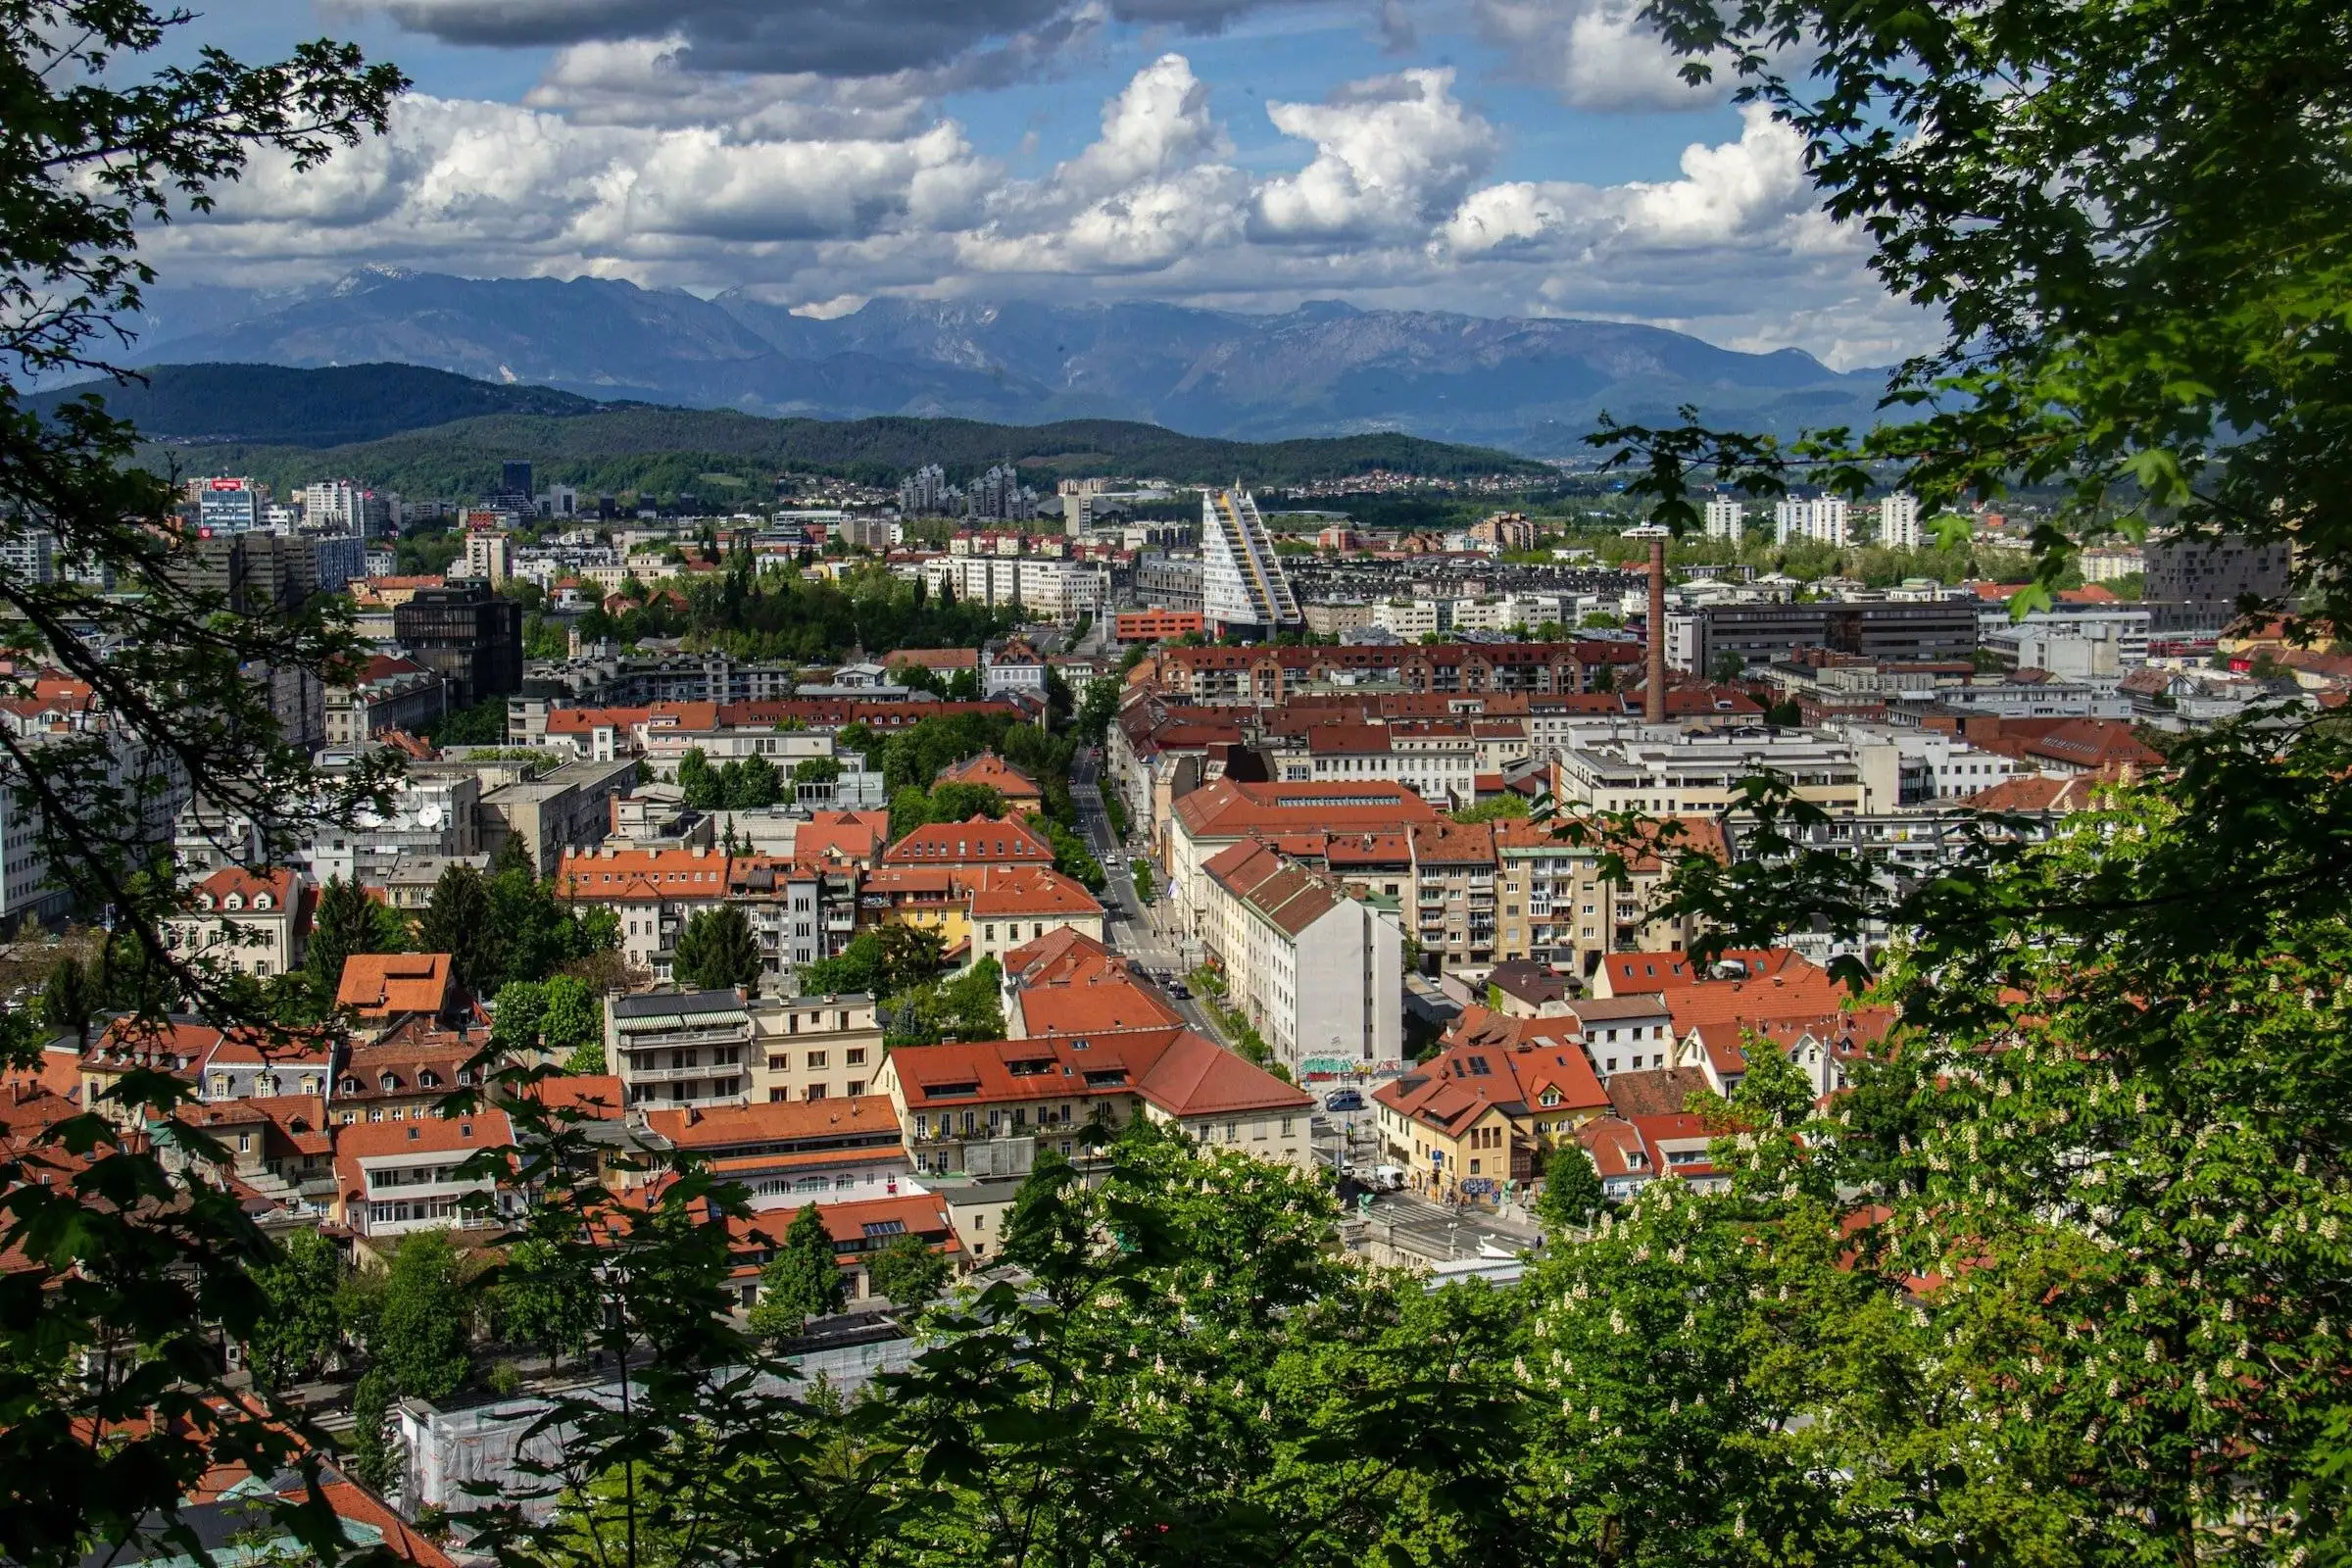 Ljubljana,Slovenia